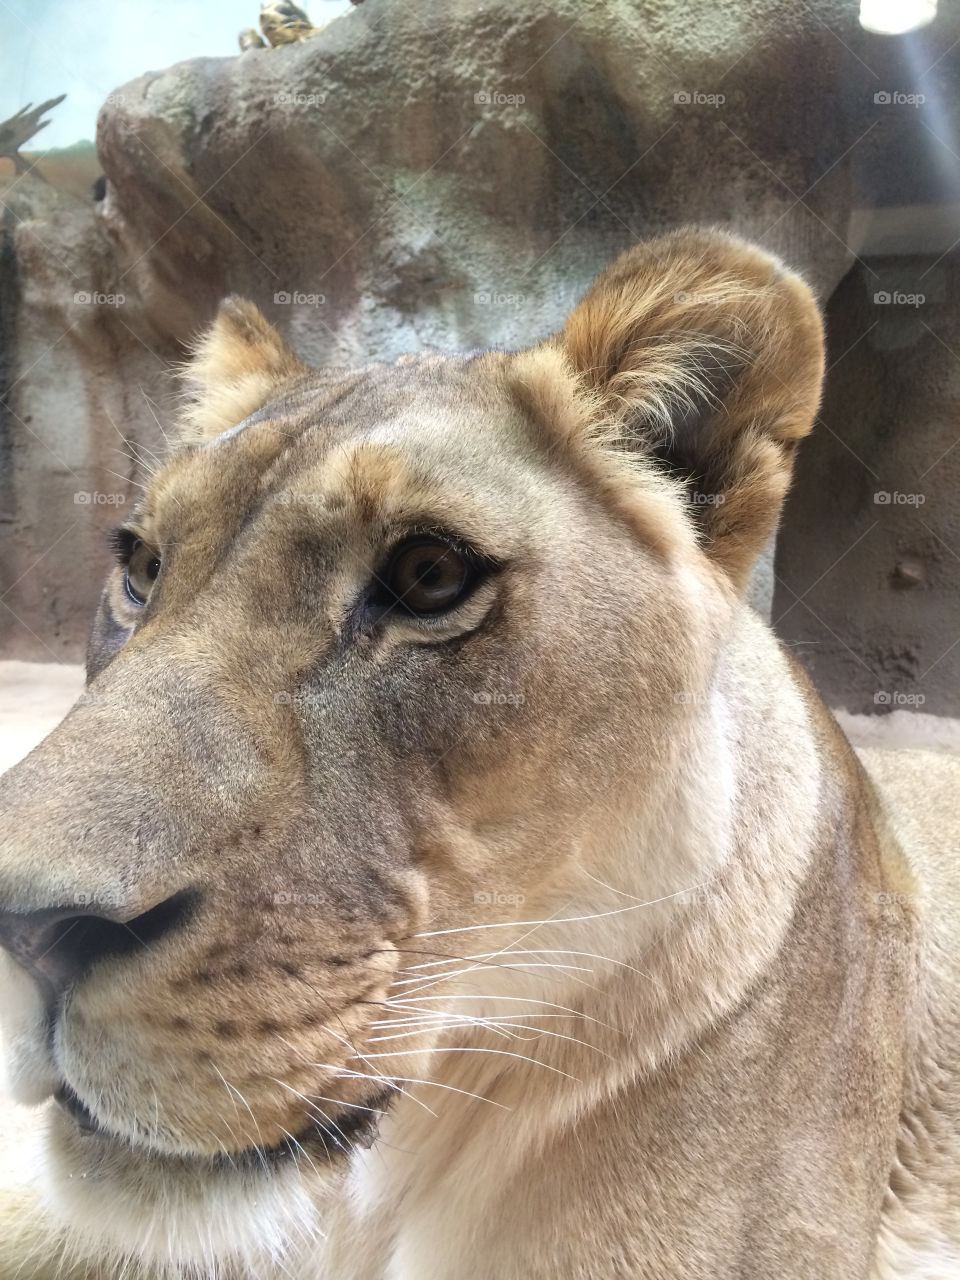 Lions eye. Taken at Potter Park Zoo in Lansing, MI